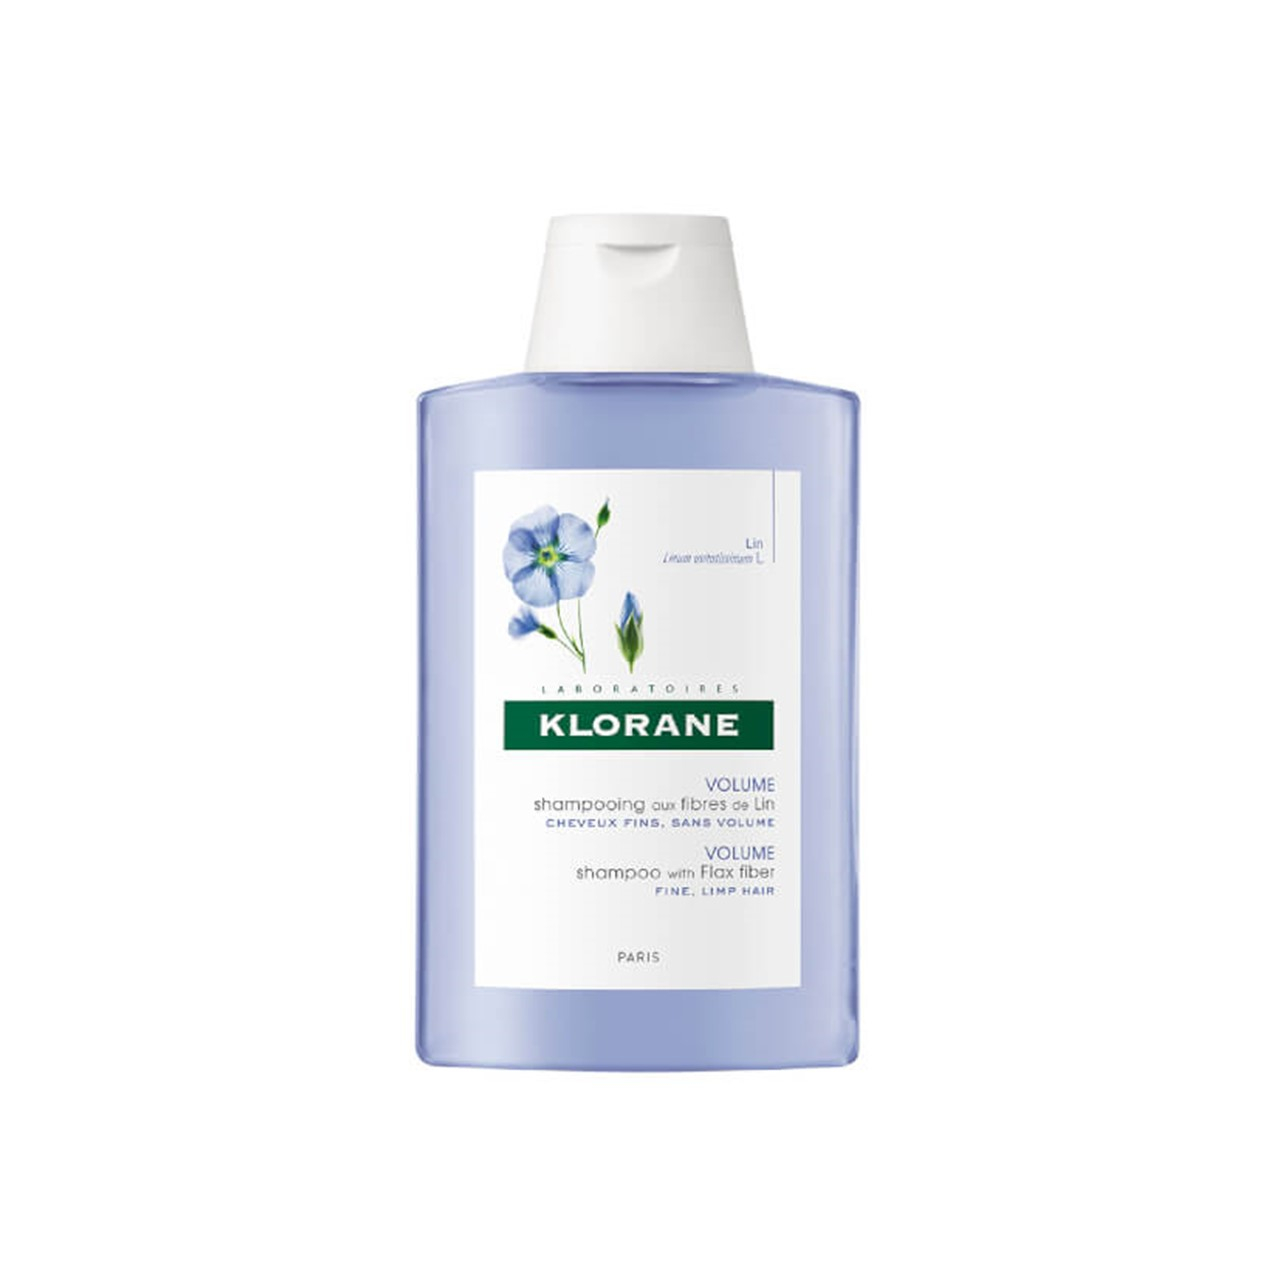 Klorane Volume Shampoo with Flax Fiber 200ml (6.76fl oz)